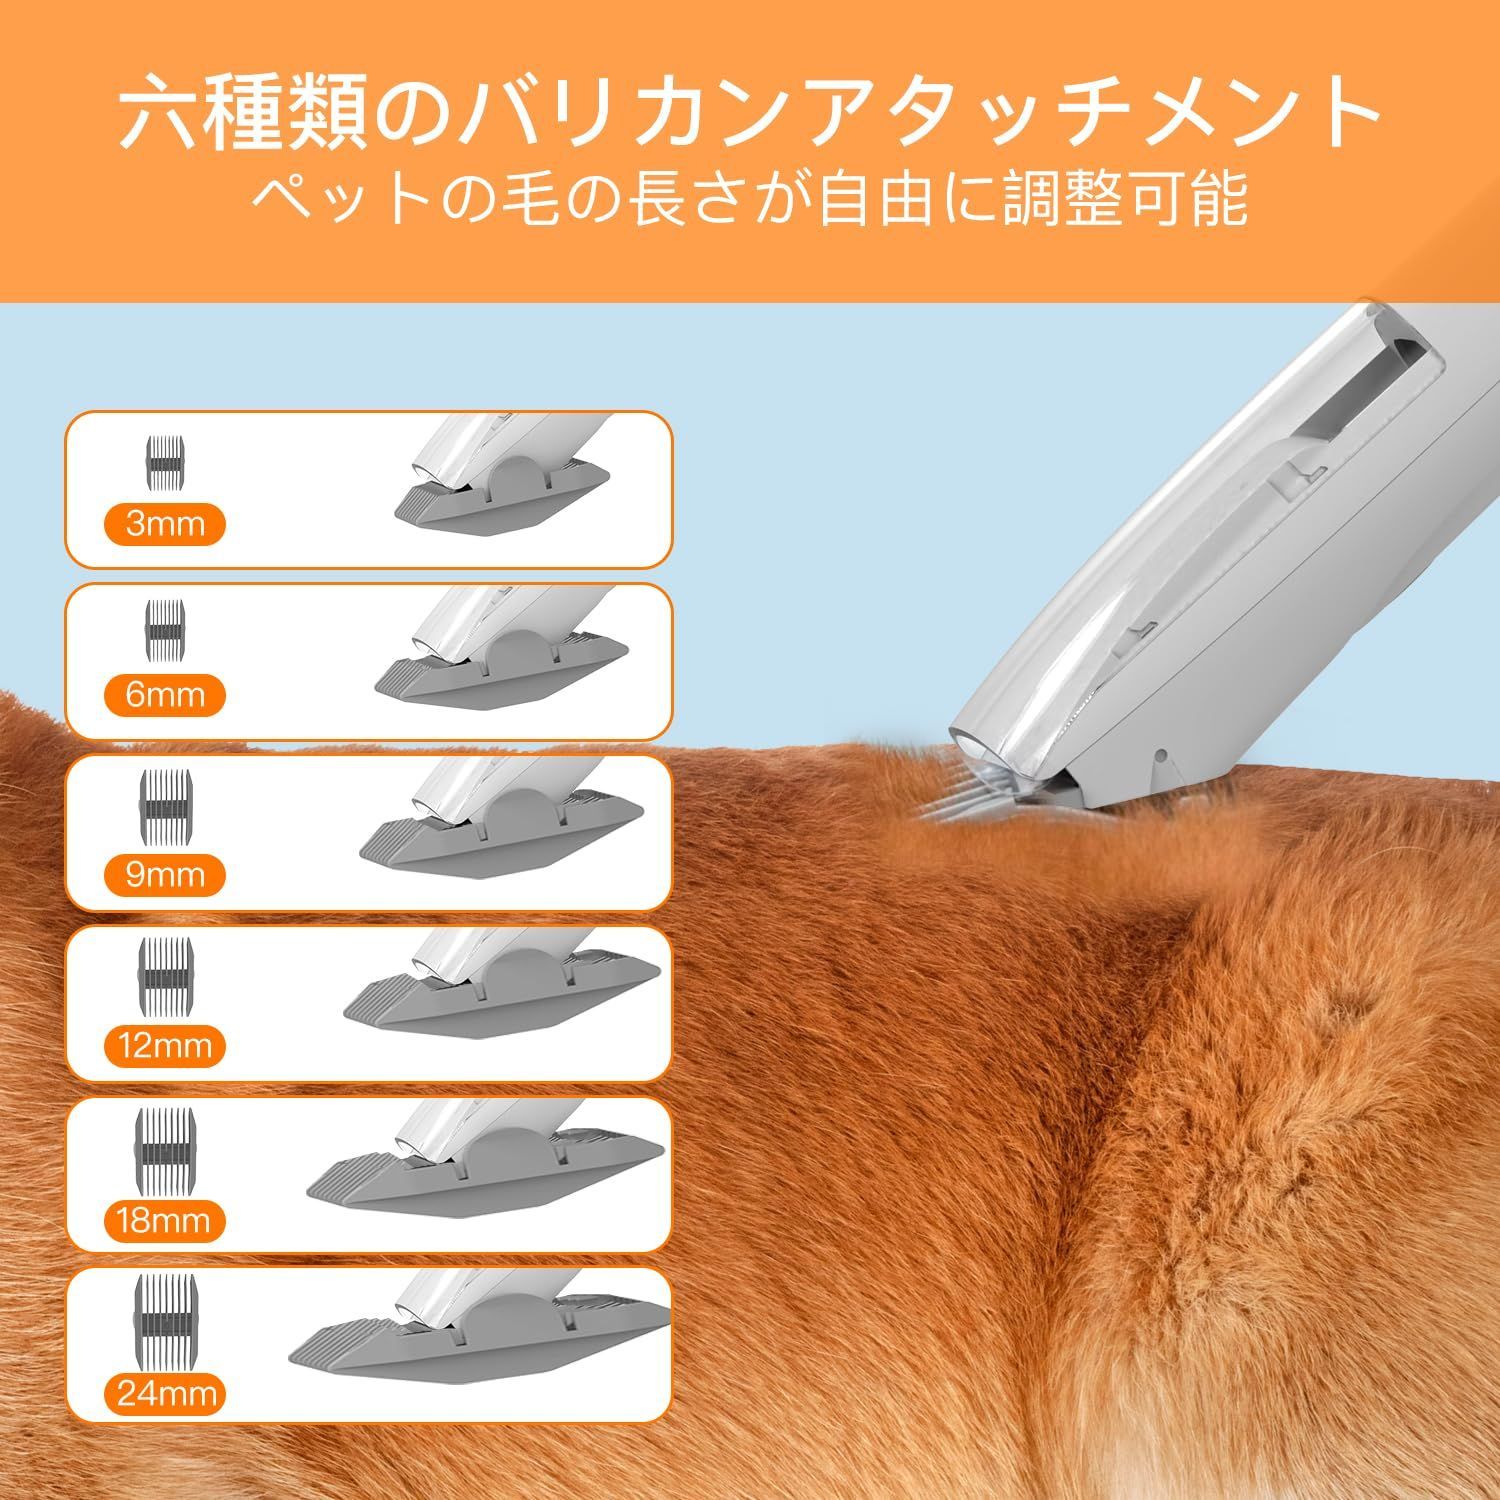 AIRROBO ペット用バリカンセット 多機能ペットルーミングセット - 犬用品